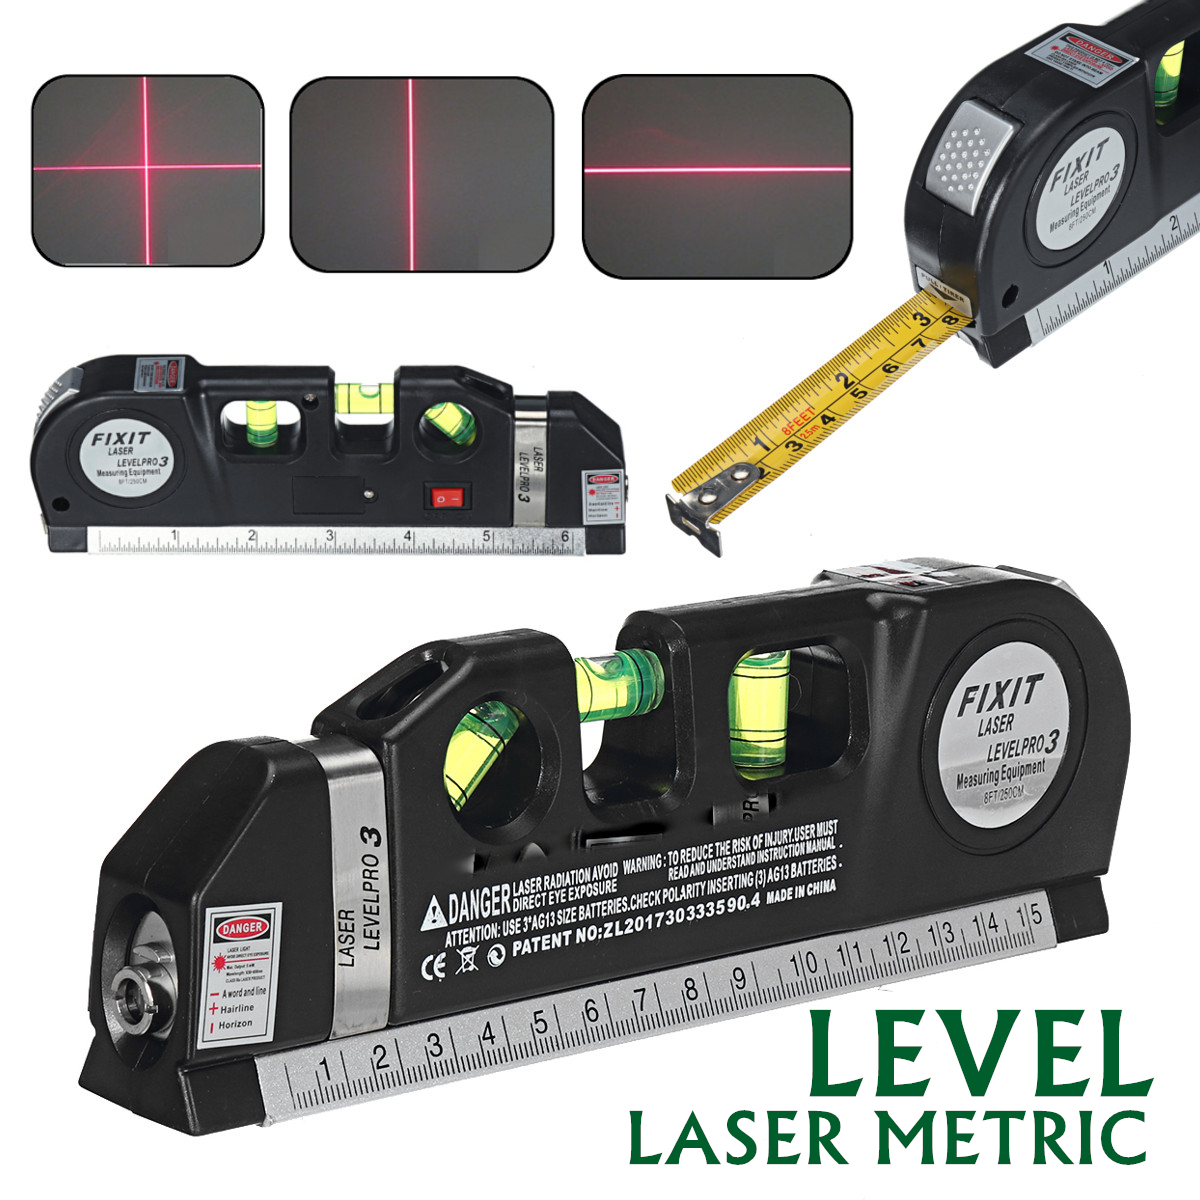 Multipurpose-Laser-Level-Vertical-Cross-Measuring-Tape-Aligner-Metric-Ruler-1628827-1